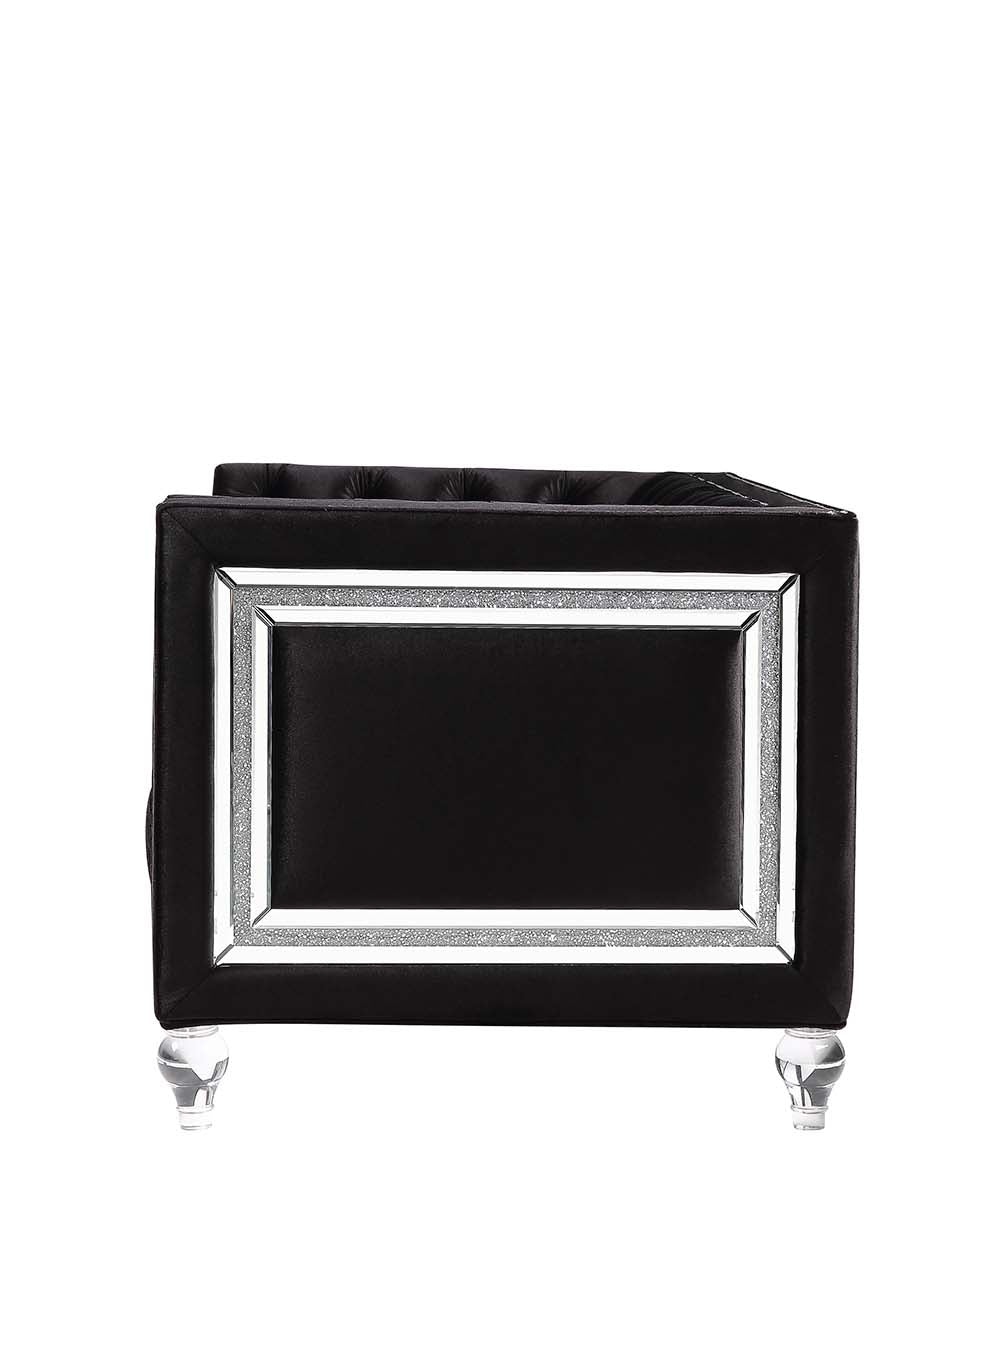 Acme - Heibero Chair (Same 56997) LV01405 Black Velvet